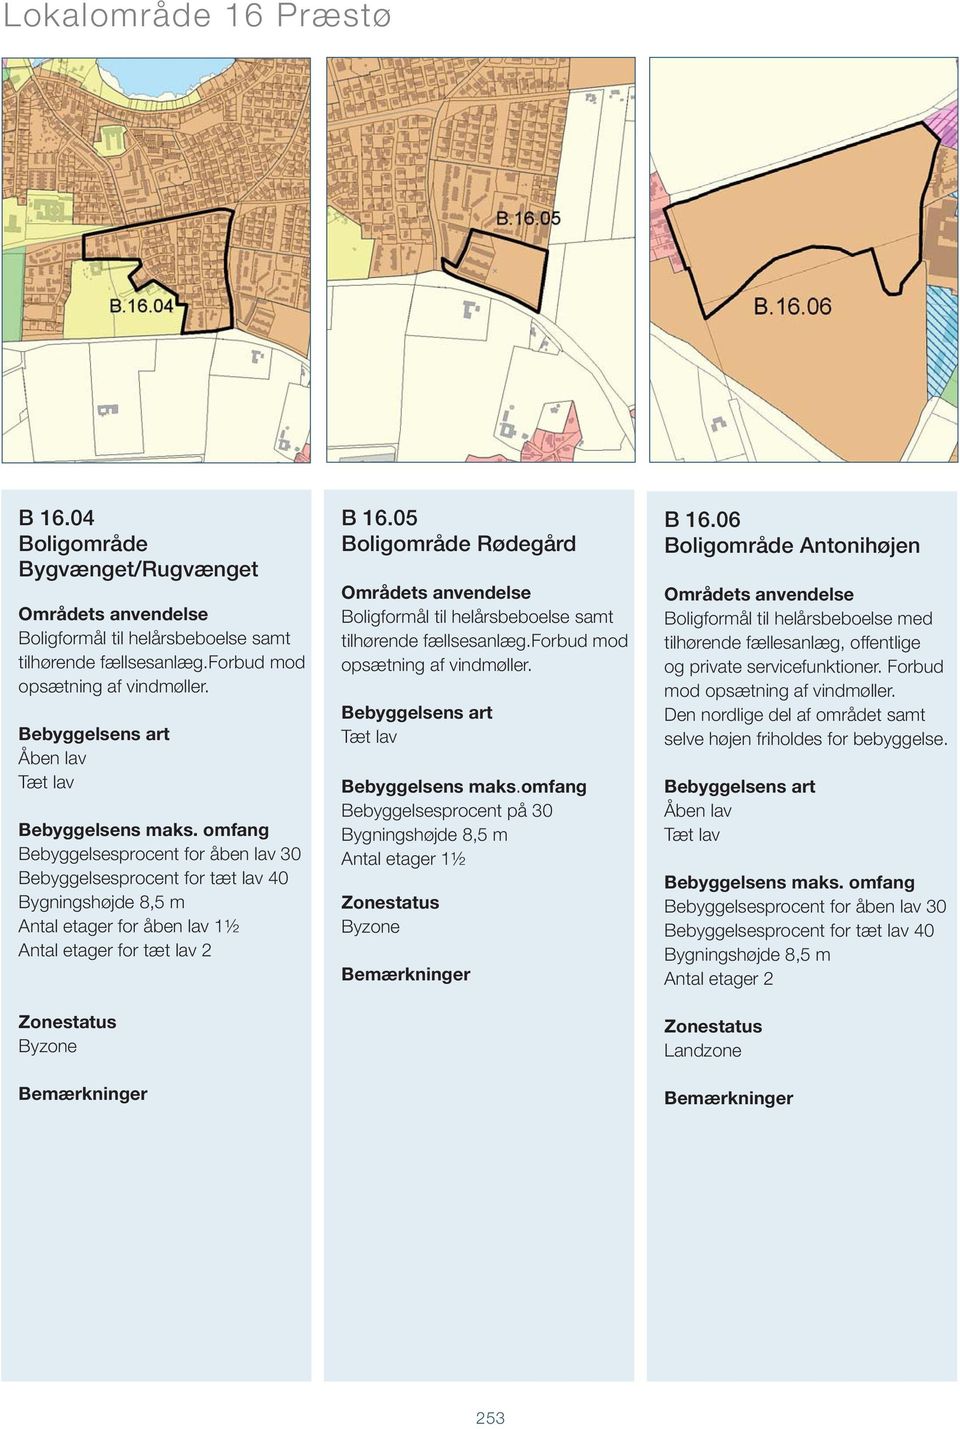 05 Boligområde Rødegård tilhørende fællsesanlæg.forbud mod Bebyggelsesprocent på 30 Antal etager 1½ B 16.